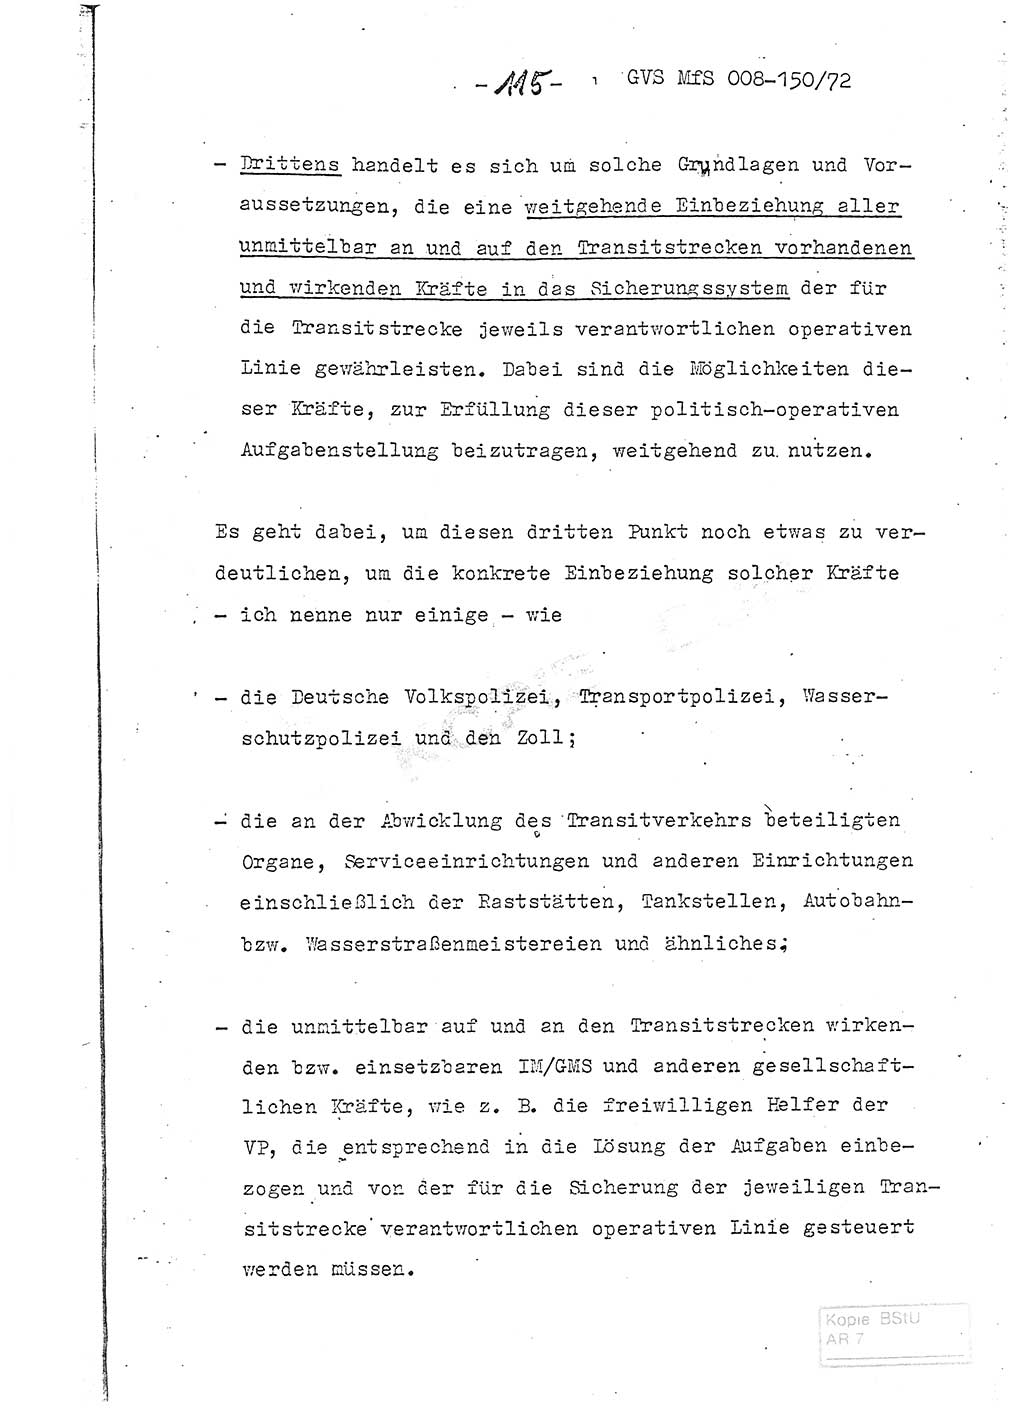 Referat (Entwurf) des Genossen Minister (Generaloberst Erich Mielke) auf der Dienstkonferenz 1972, Ministerium für Staatssicherheit (MfS) [Deutsche Demokratische Republik (DDR)], Der Minister, Geheime Verschlußsache (GVS) 008-150/72, Berlin 25.2.1972, Seite 115 (Ref. Entw. DK MfS DDR Min. GVS 008-150/72 1972, S. 115)